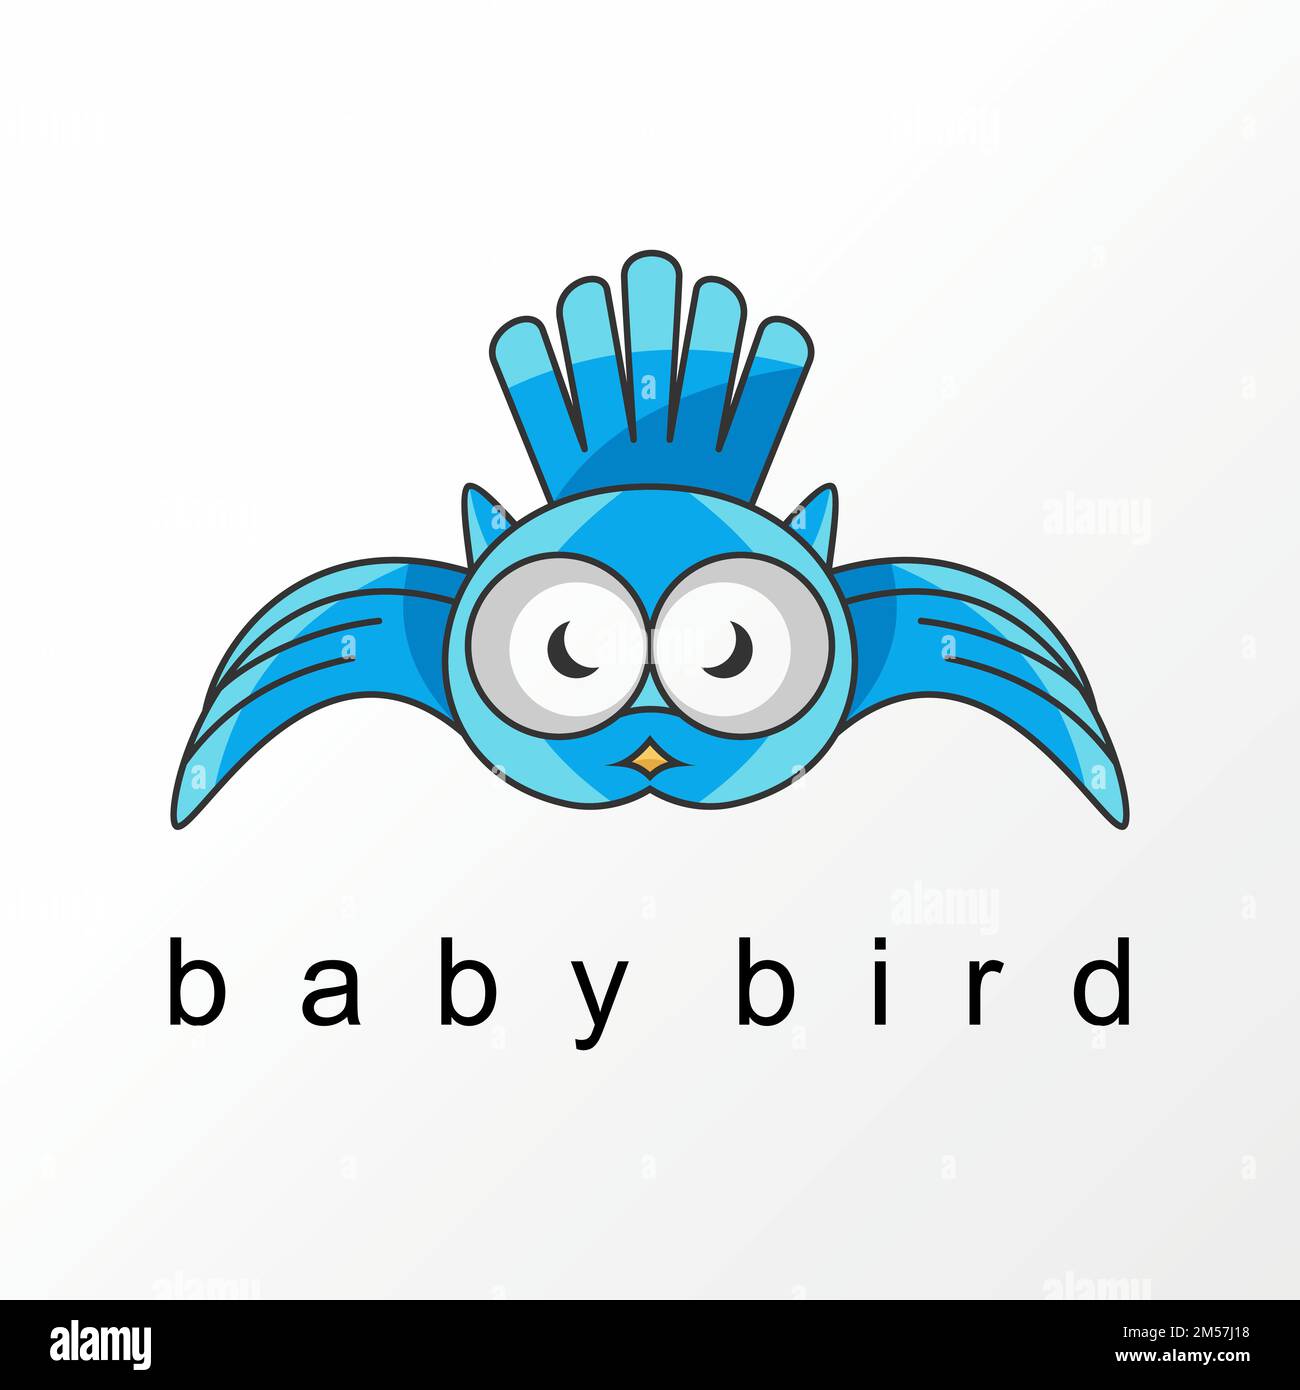 Unique mignon bébé oiseau en volant image graphique icône logo design abstrait concept vecteur stock. utilisé comme symbole associé à un animal ou un caractère Illustration de Vecteur